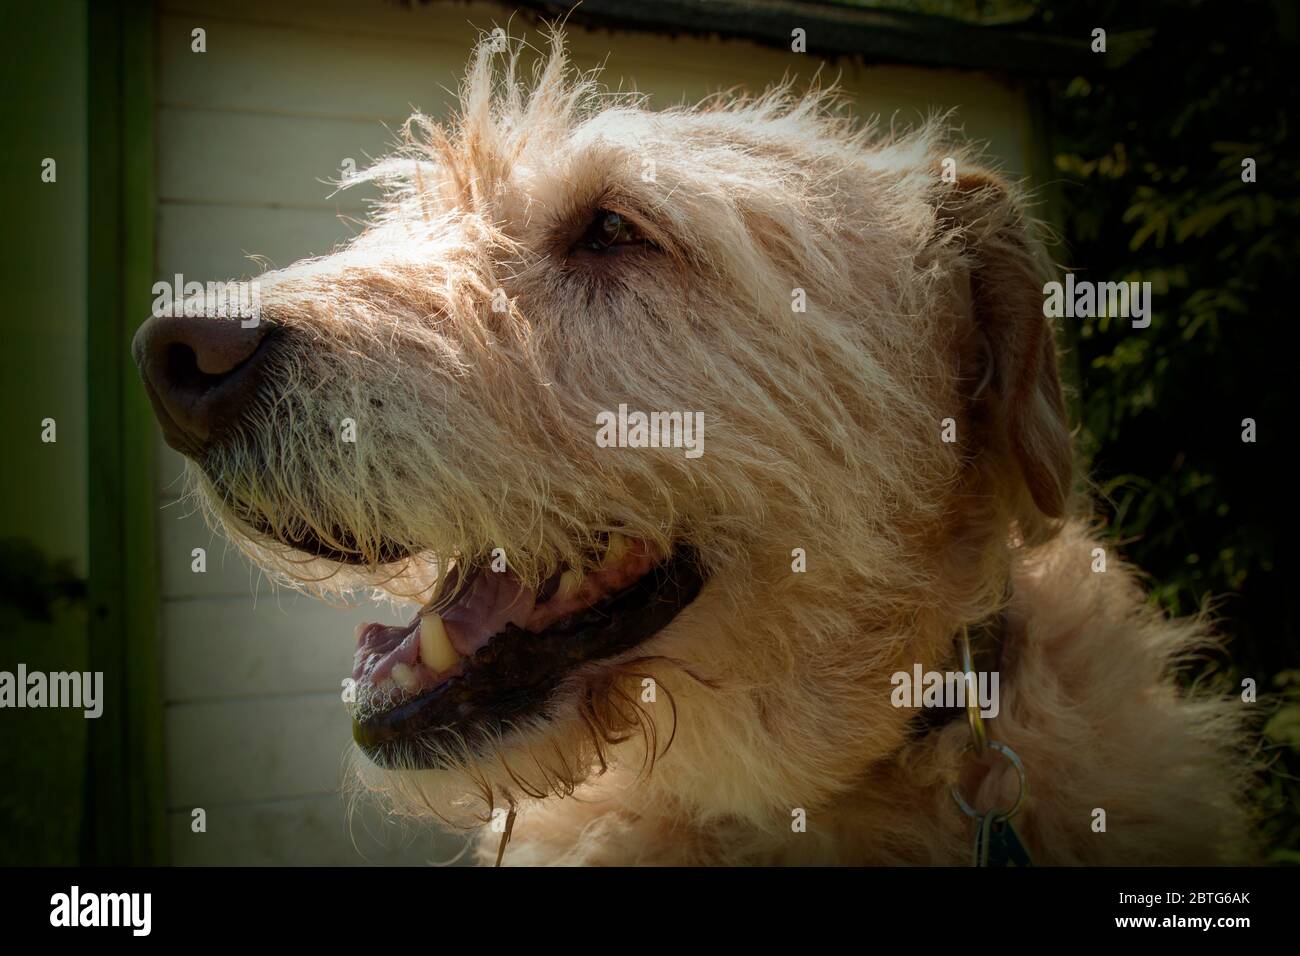 friendly doggy portrait Stock Photo